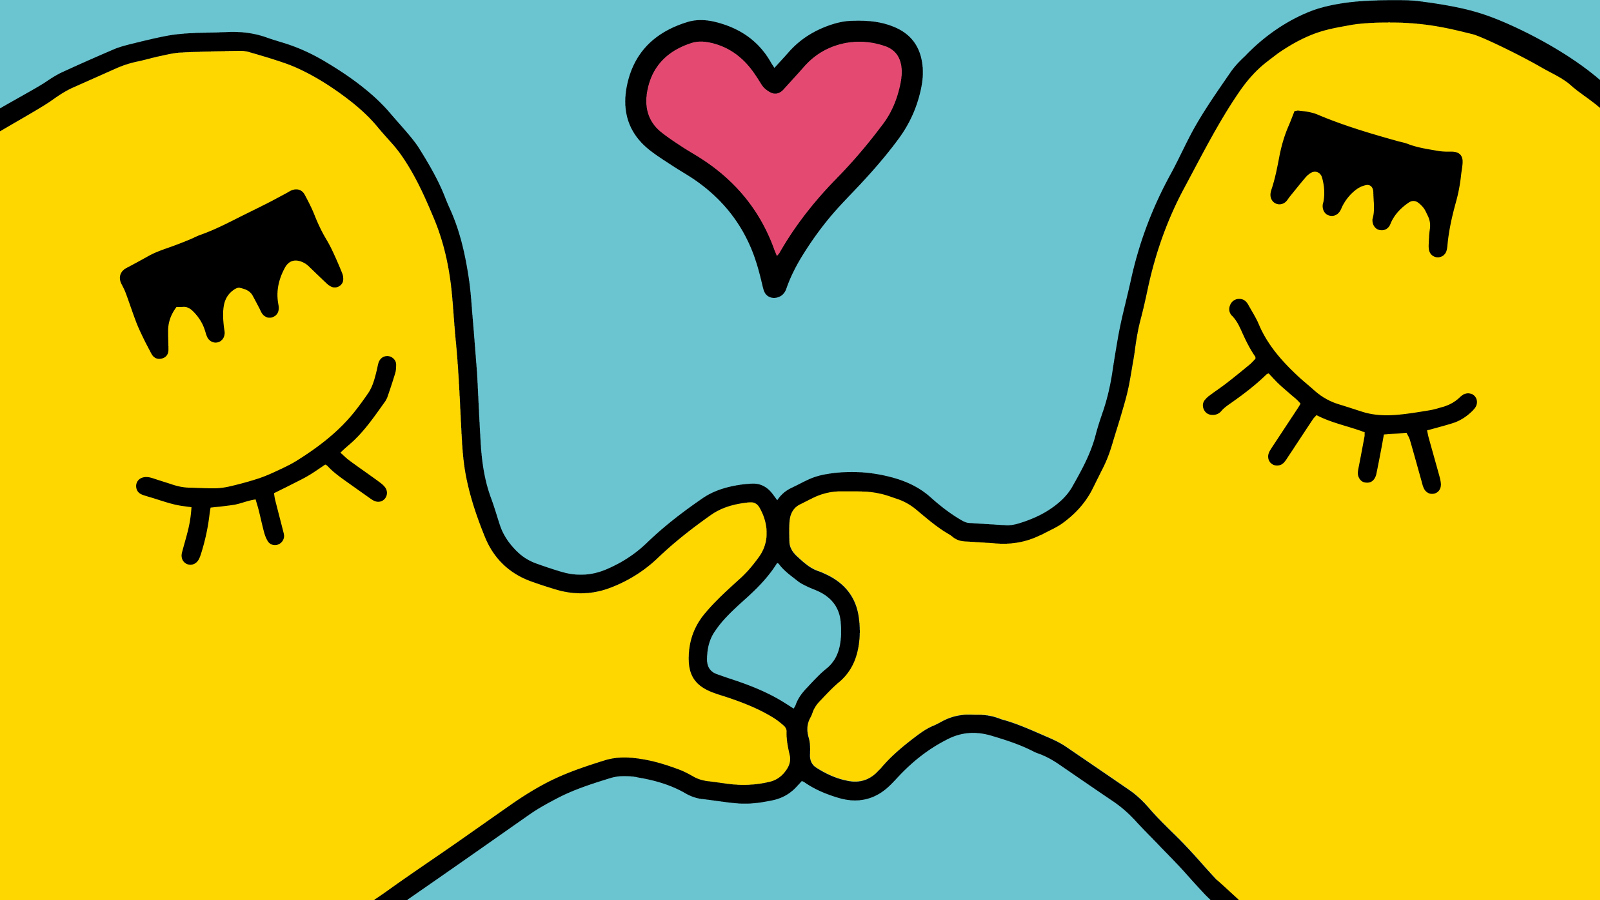 Kuvassa on keltaiset mustekalan muotoiset piirroskuvat, jotka pussaavat ja huulien välissä on punainen sydän.